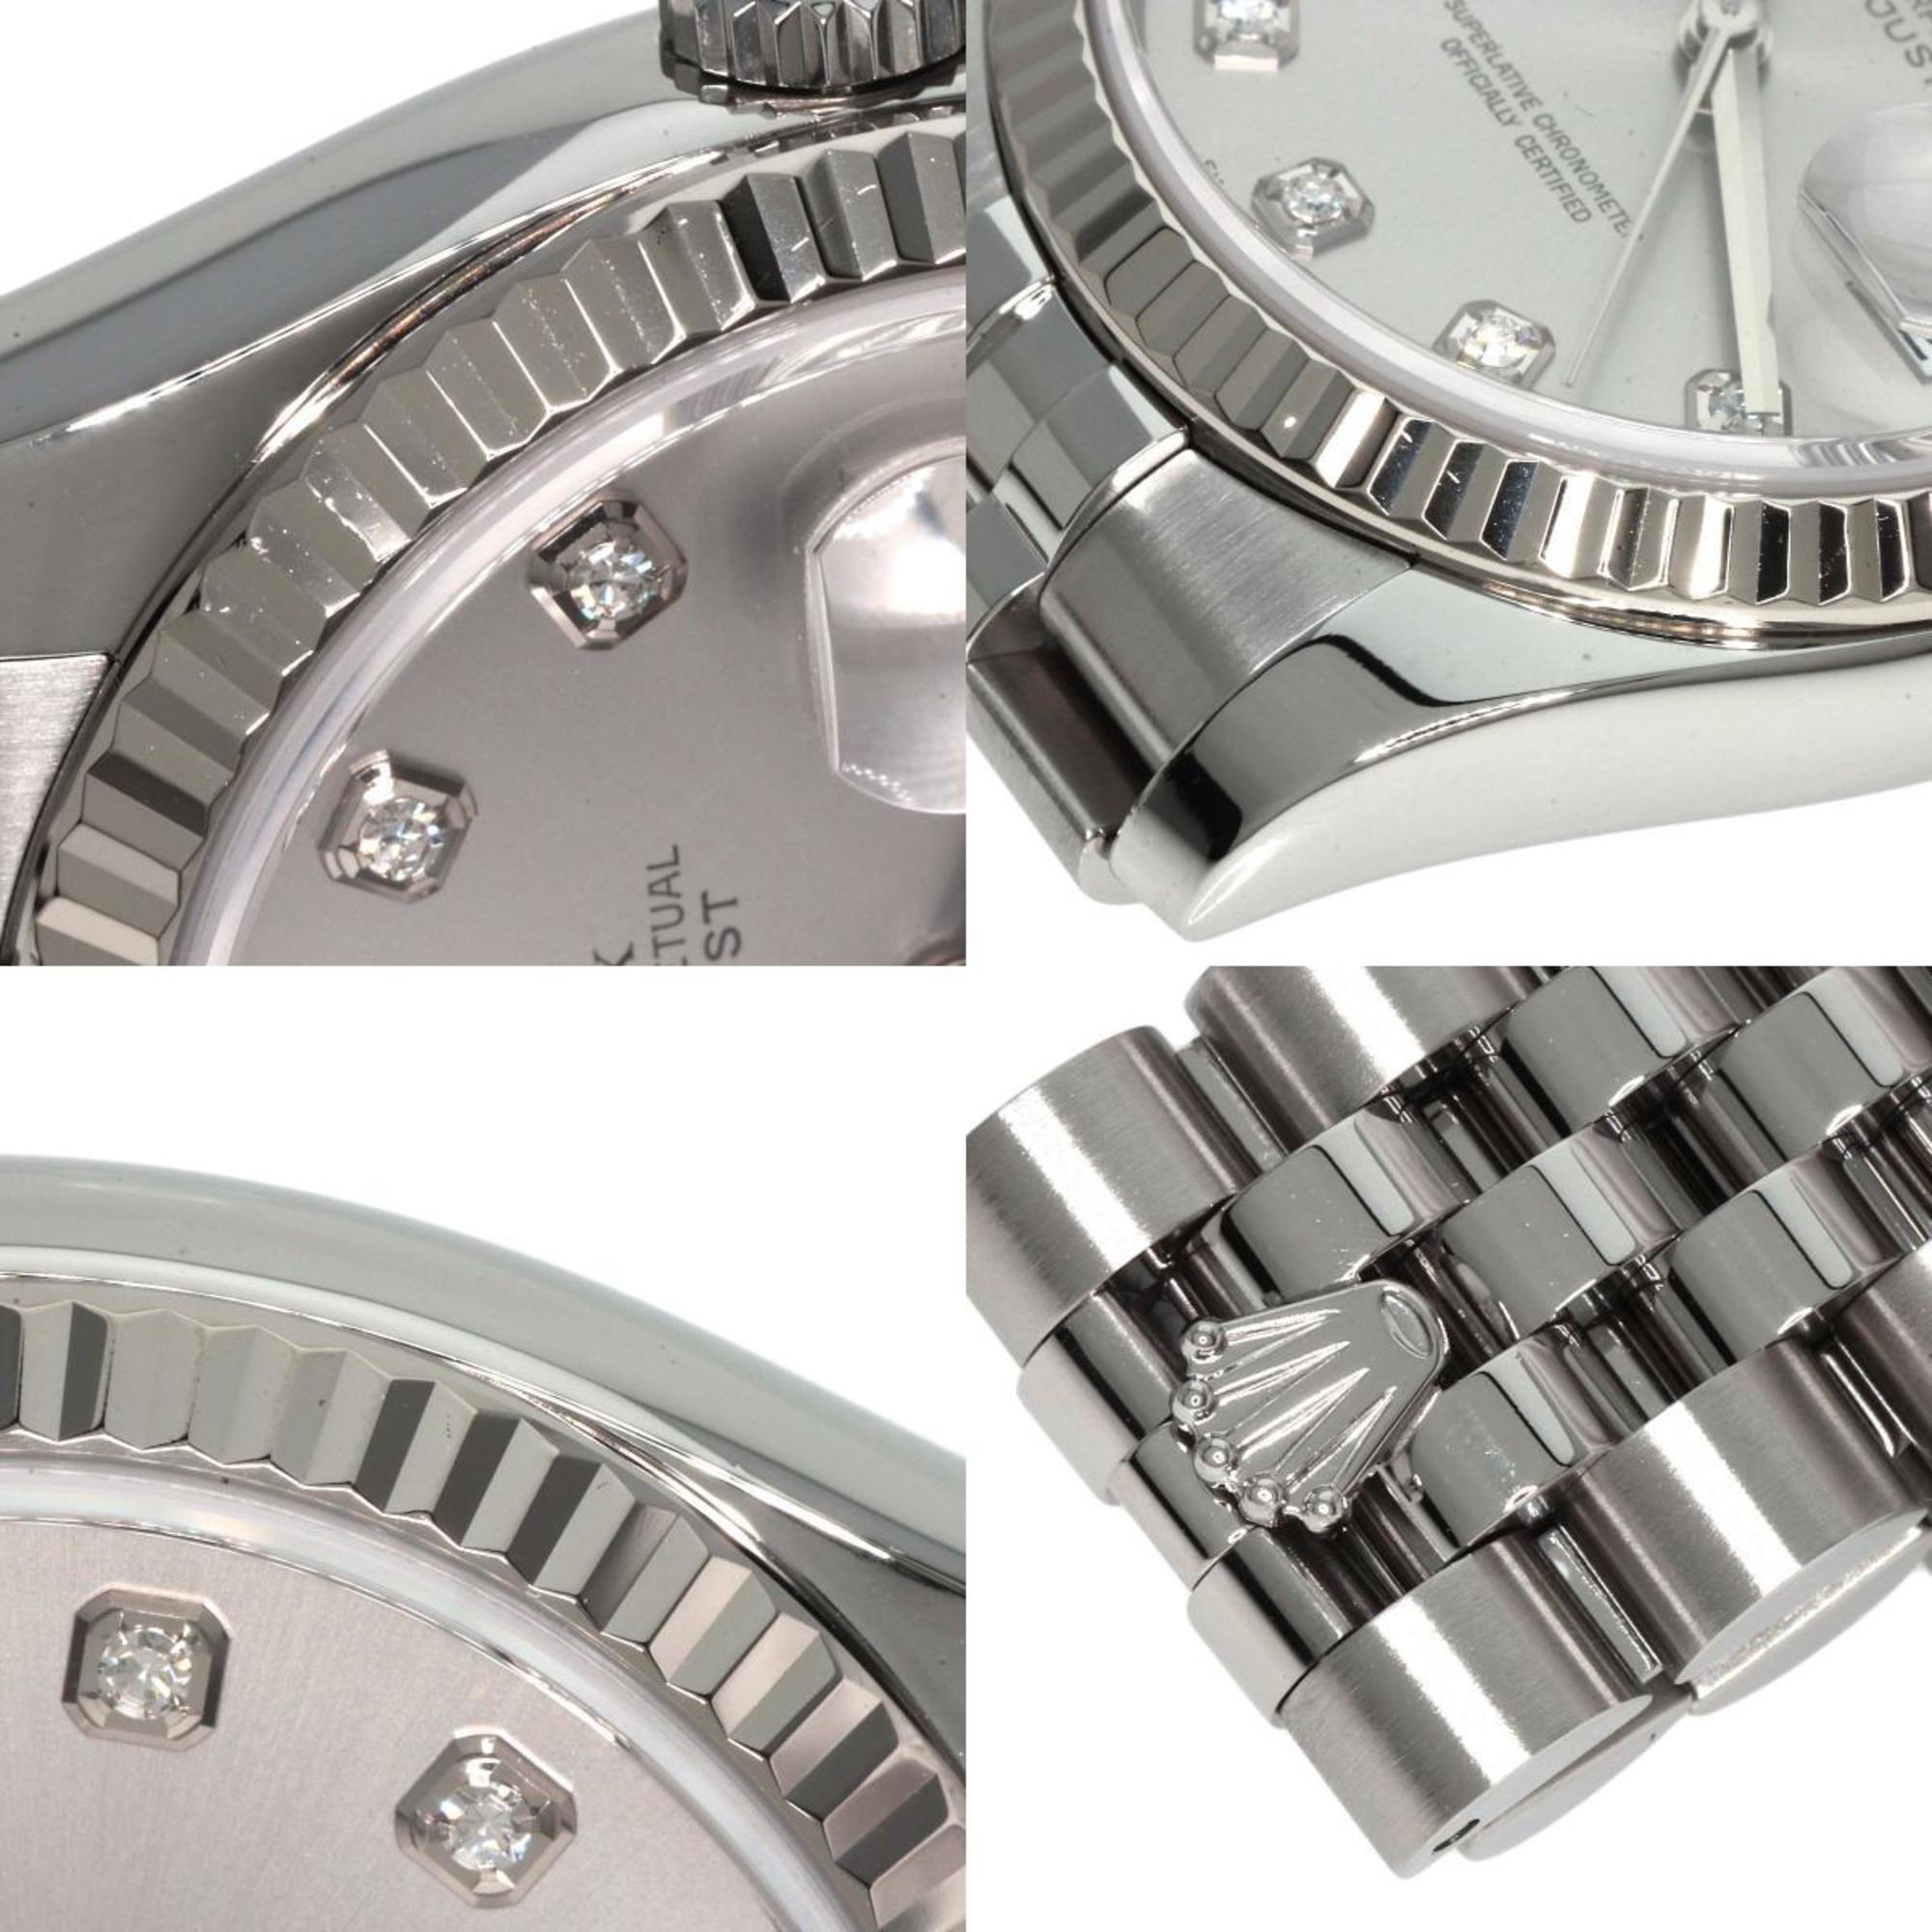 Rolex 116234G Datejust Maker Complete Watch Stainless Steel/SSxK18WG/K18WG Men's ROLEX